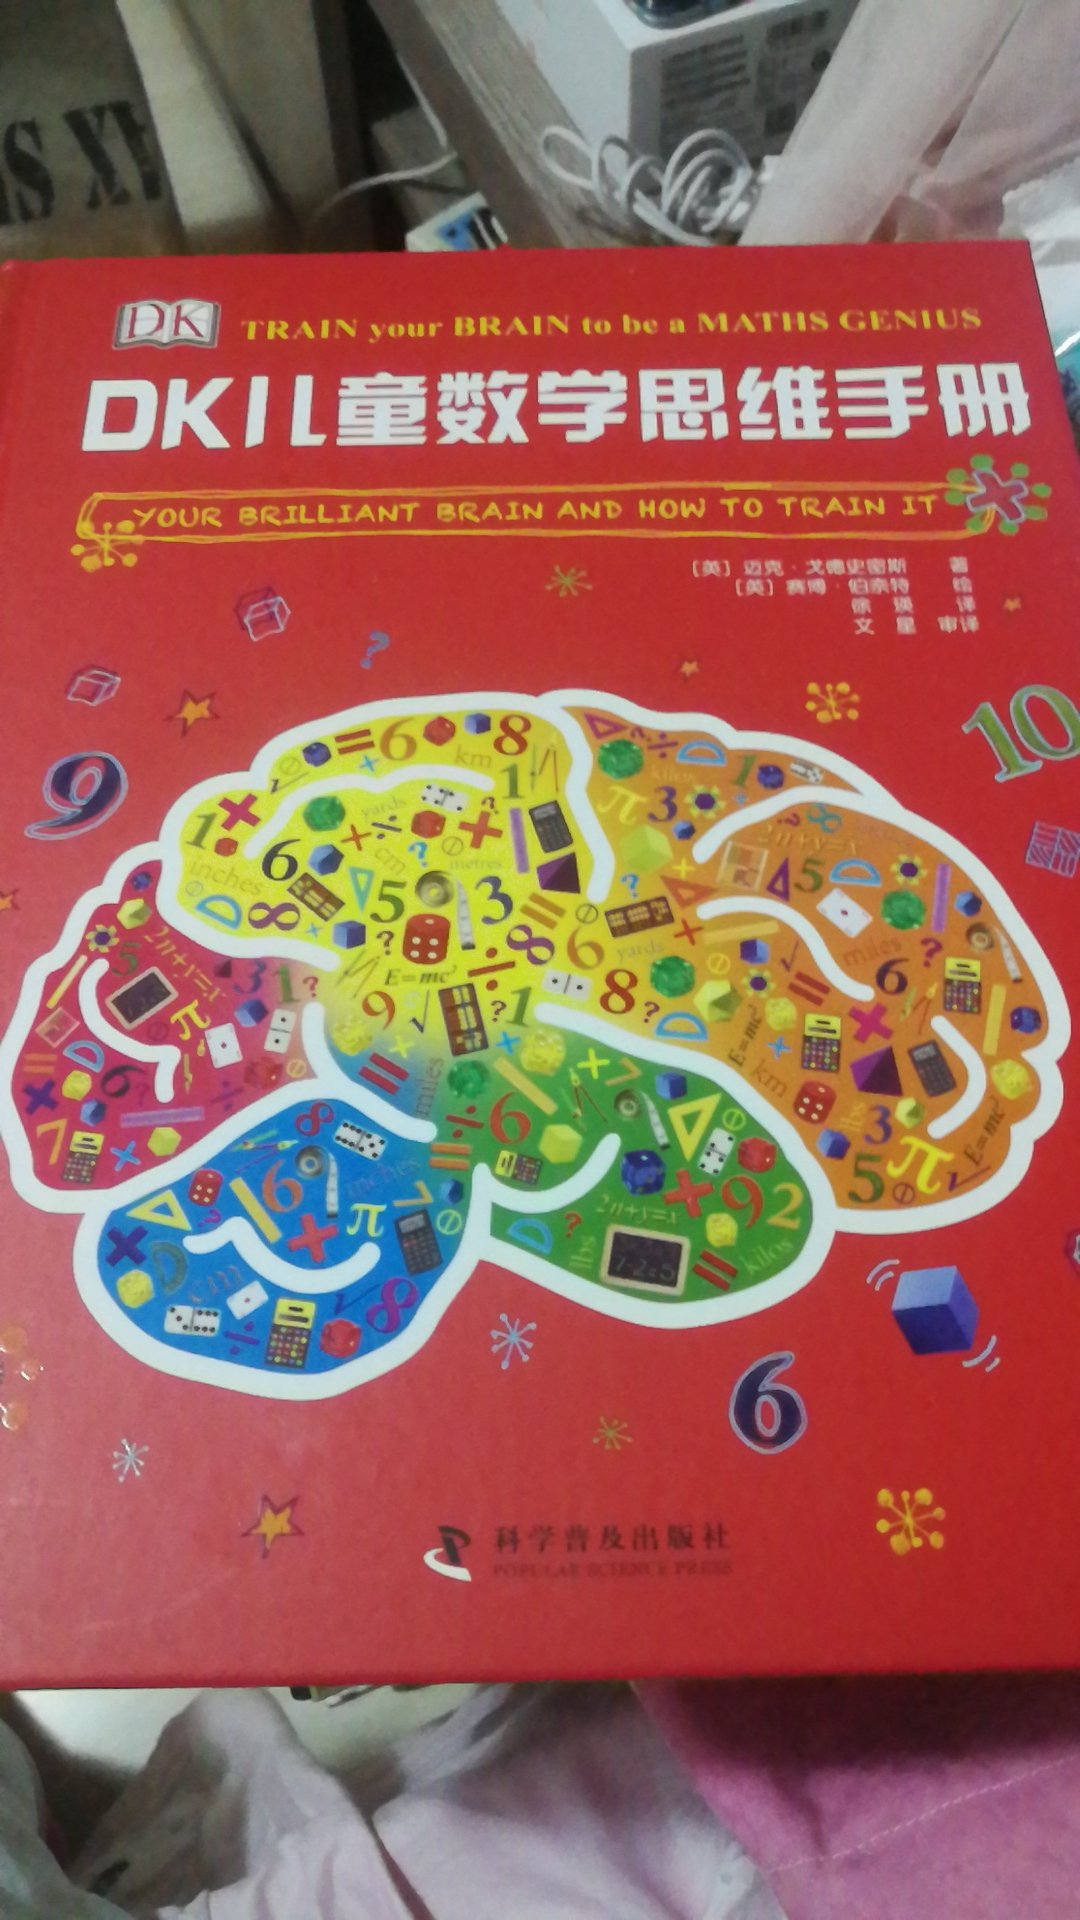 DK数学思维超棒的书，从童书妈妈推荐获悉购入，自行关注了解该题材内容强烈推荐素材